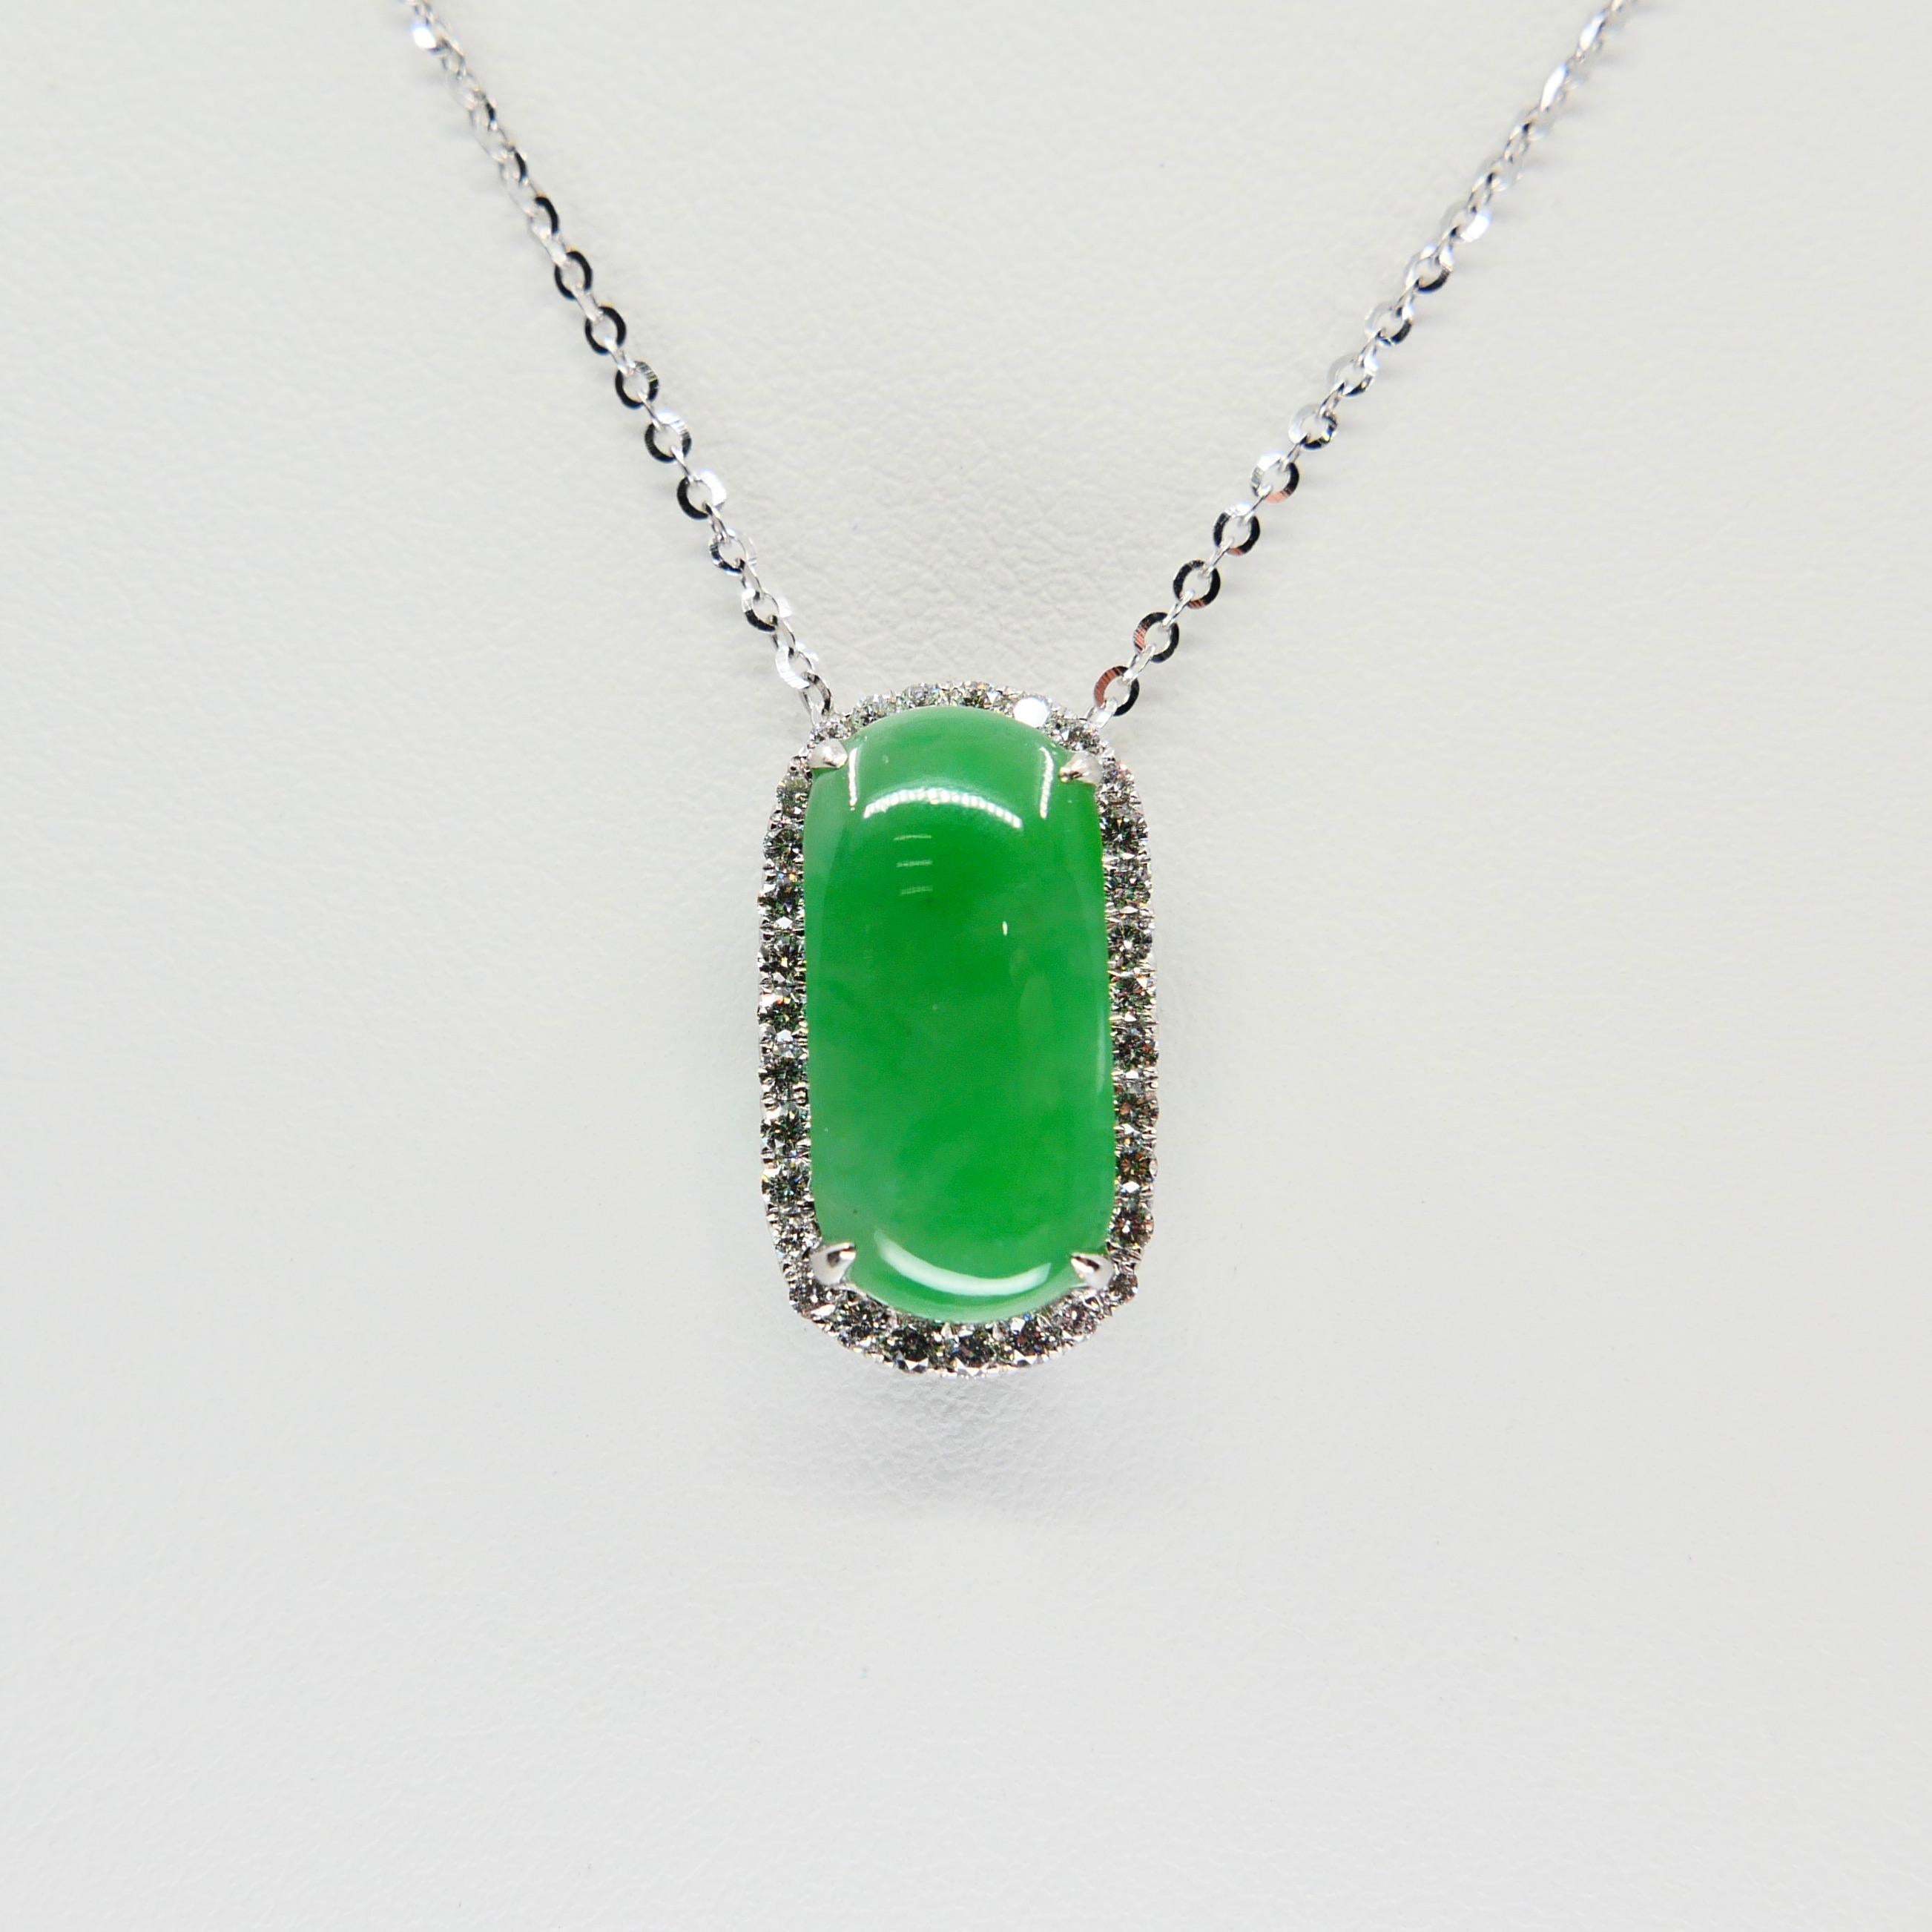 Rough Cut Certified Type A Jadeite Jade Diamond Pendant Drop Necklace, Apple Green Color For Sale